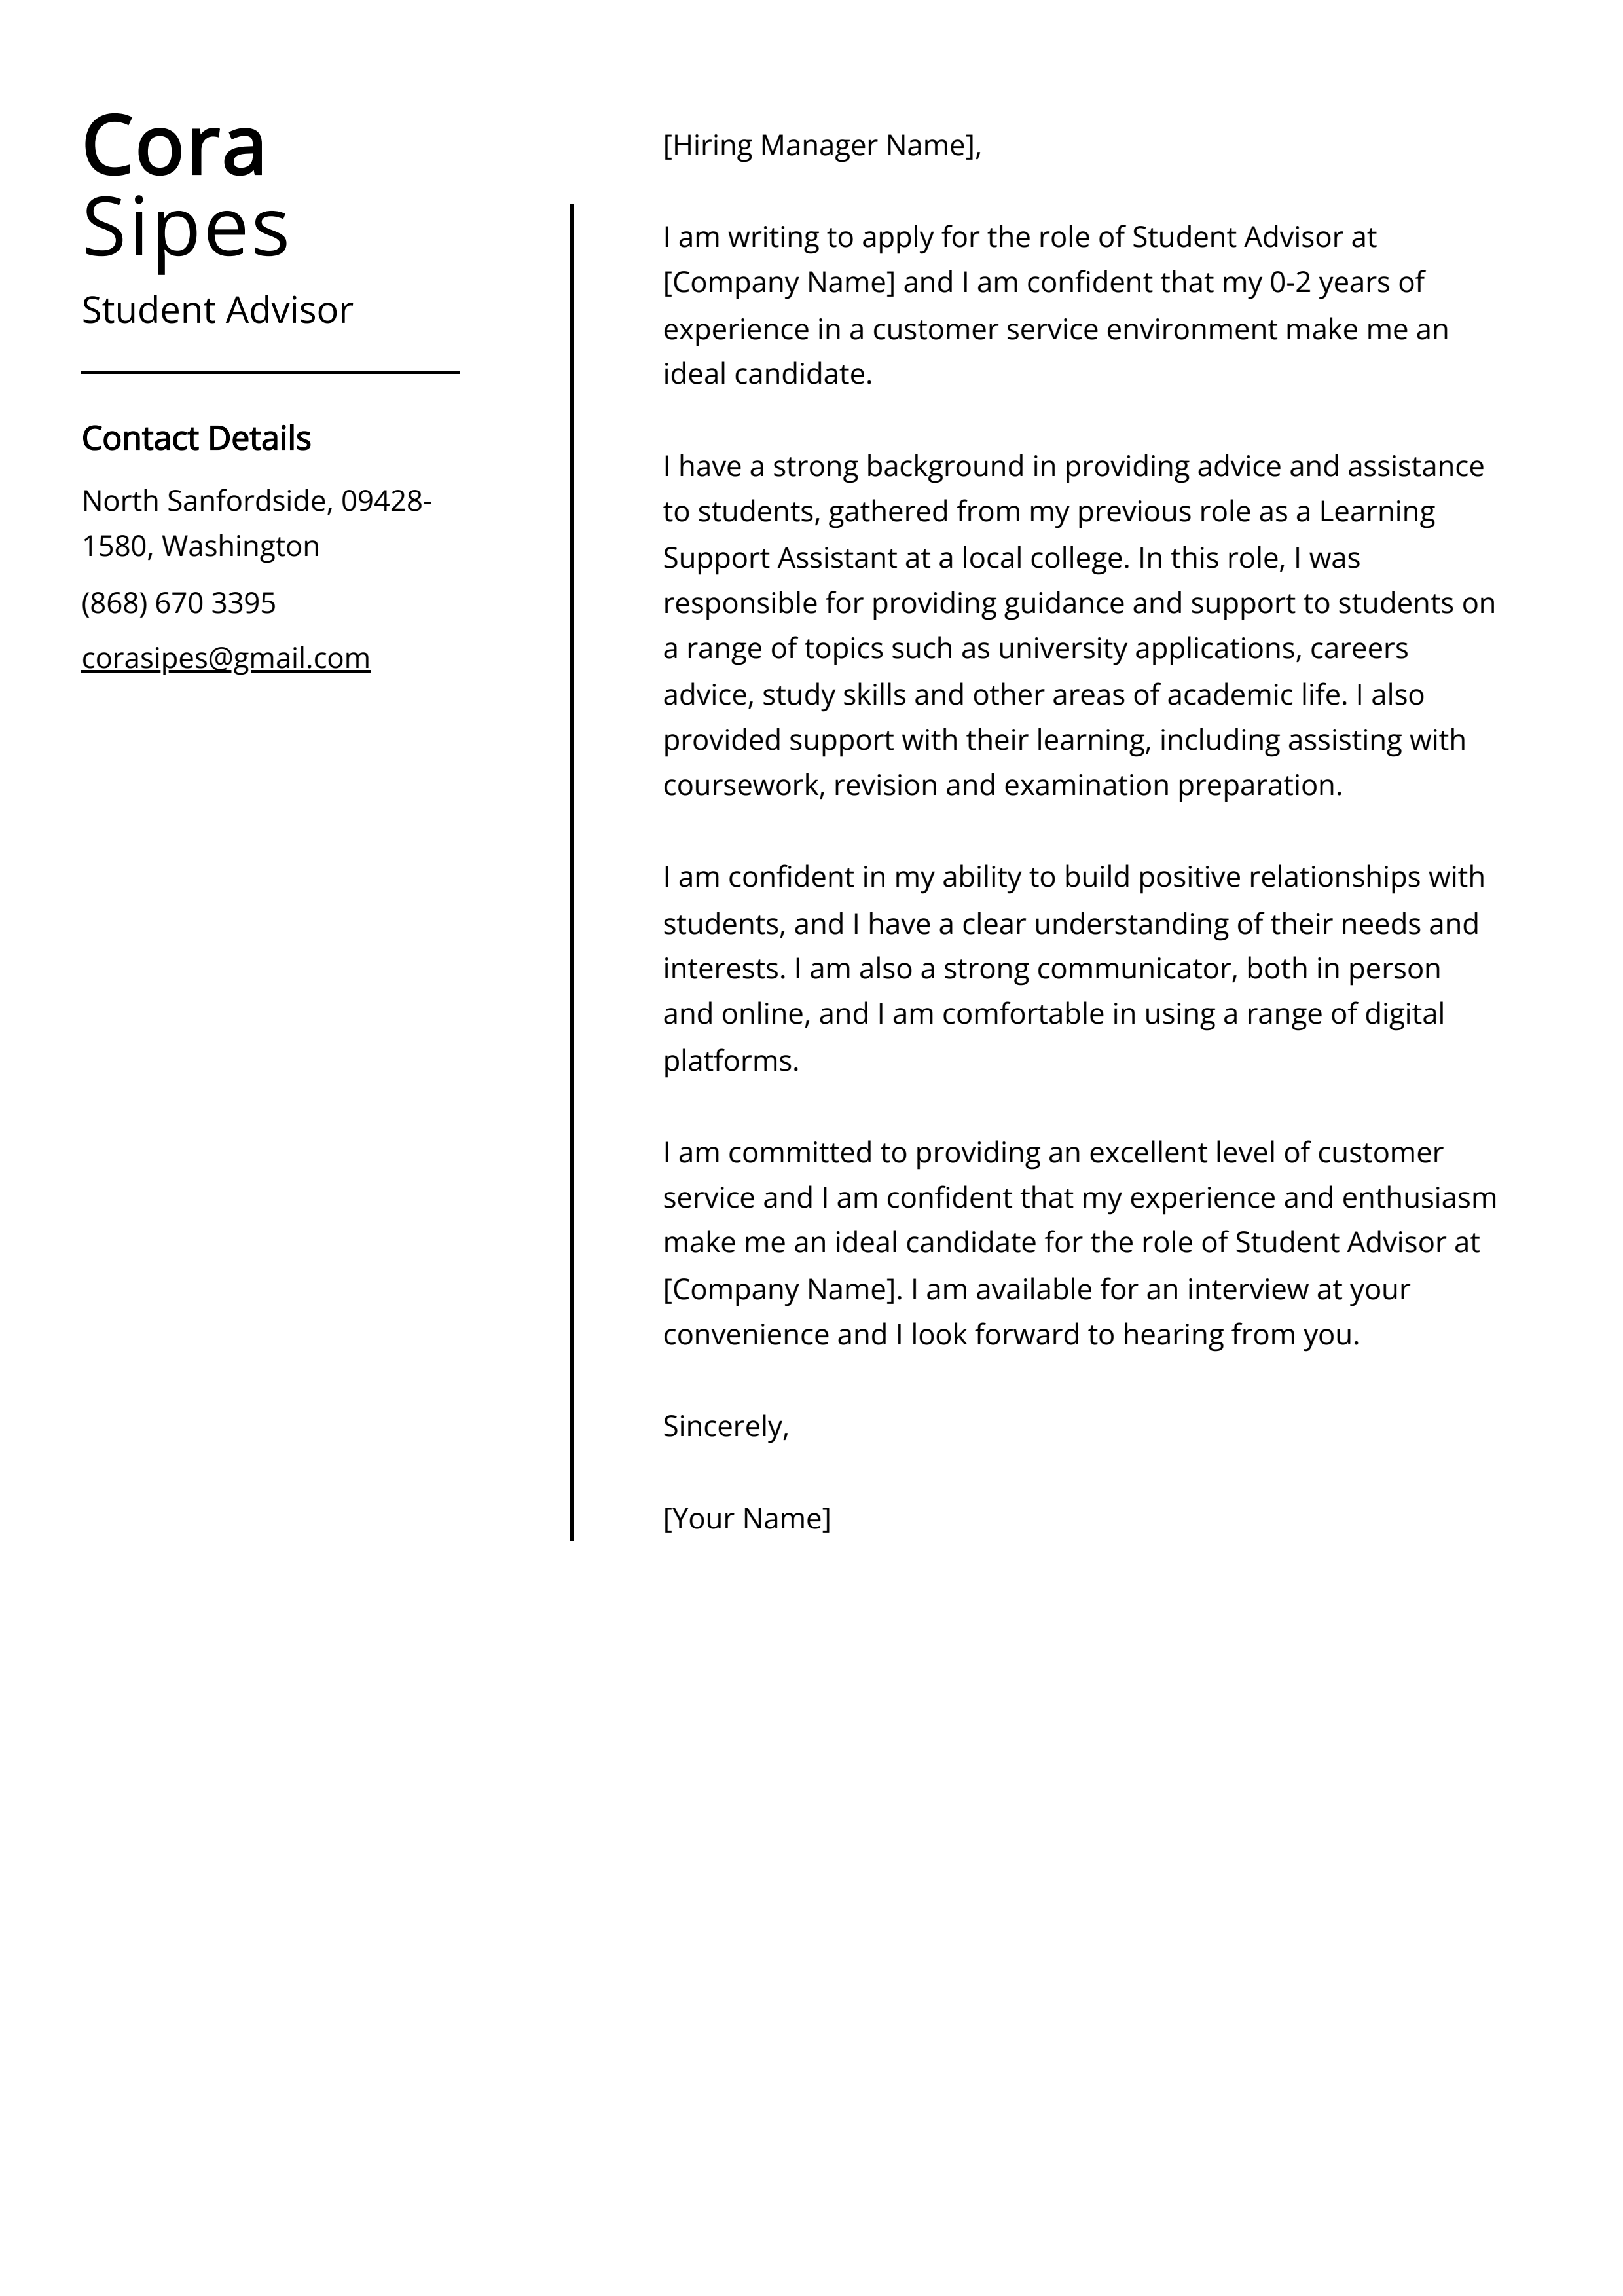 Student Advisor Cover Letter Example